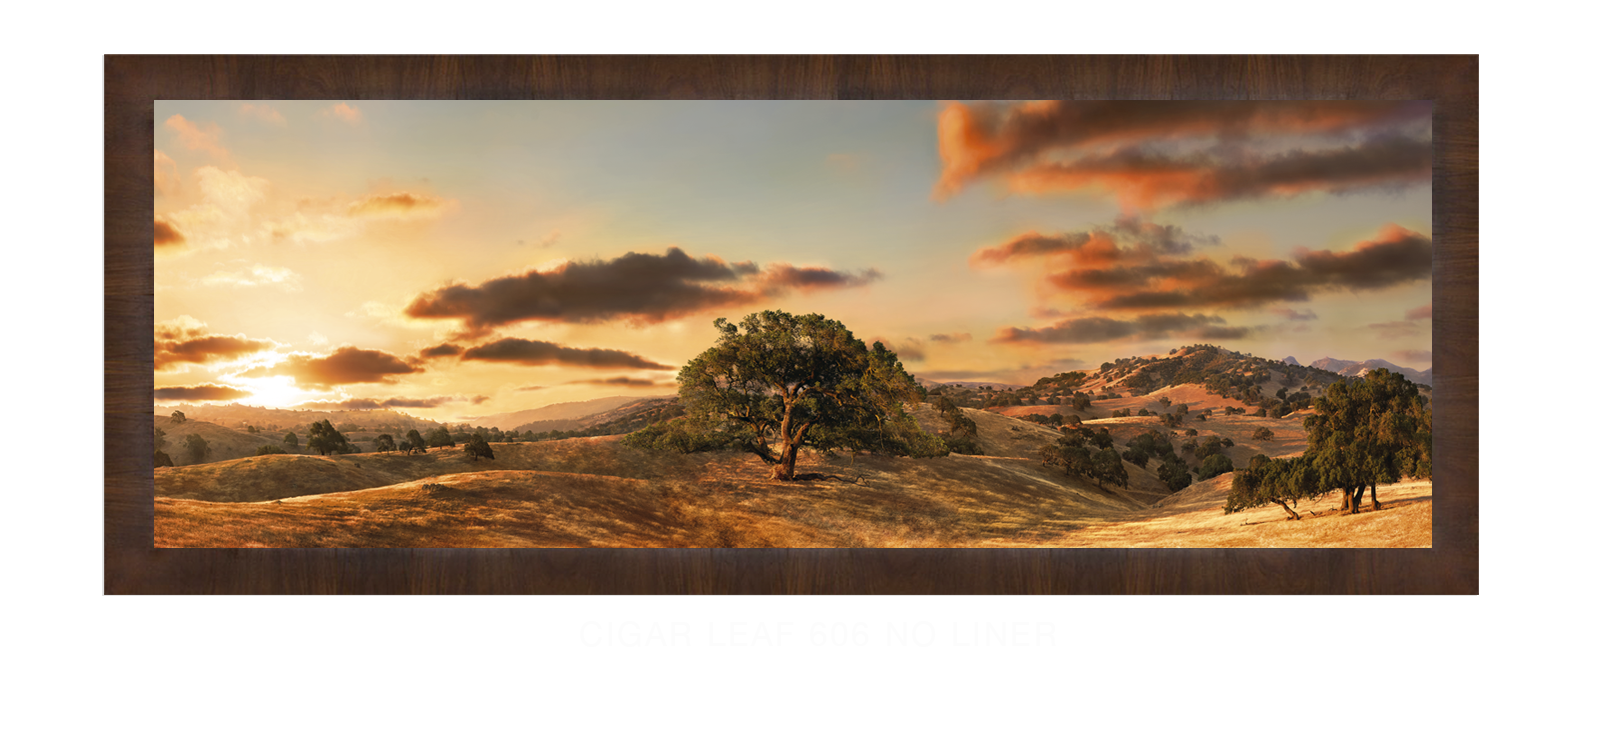 22OAKS Cigar Leaf 606 w_No Liner T